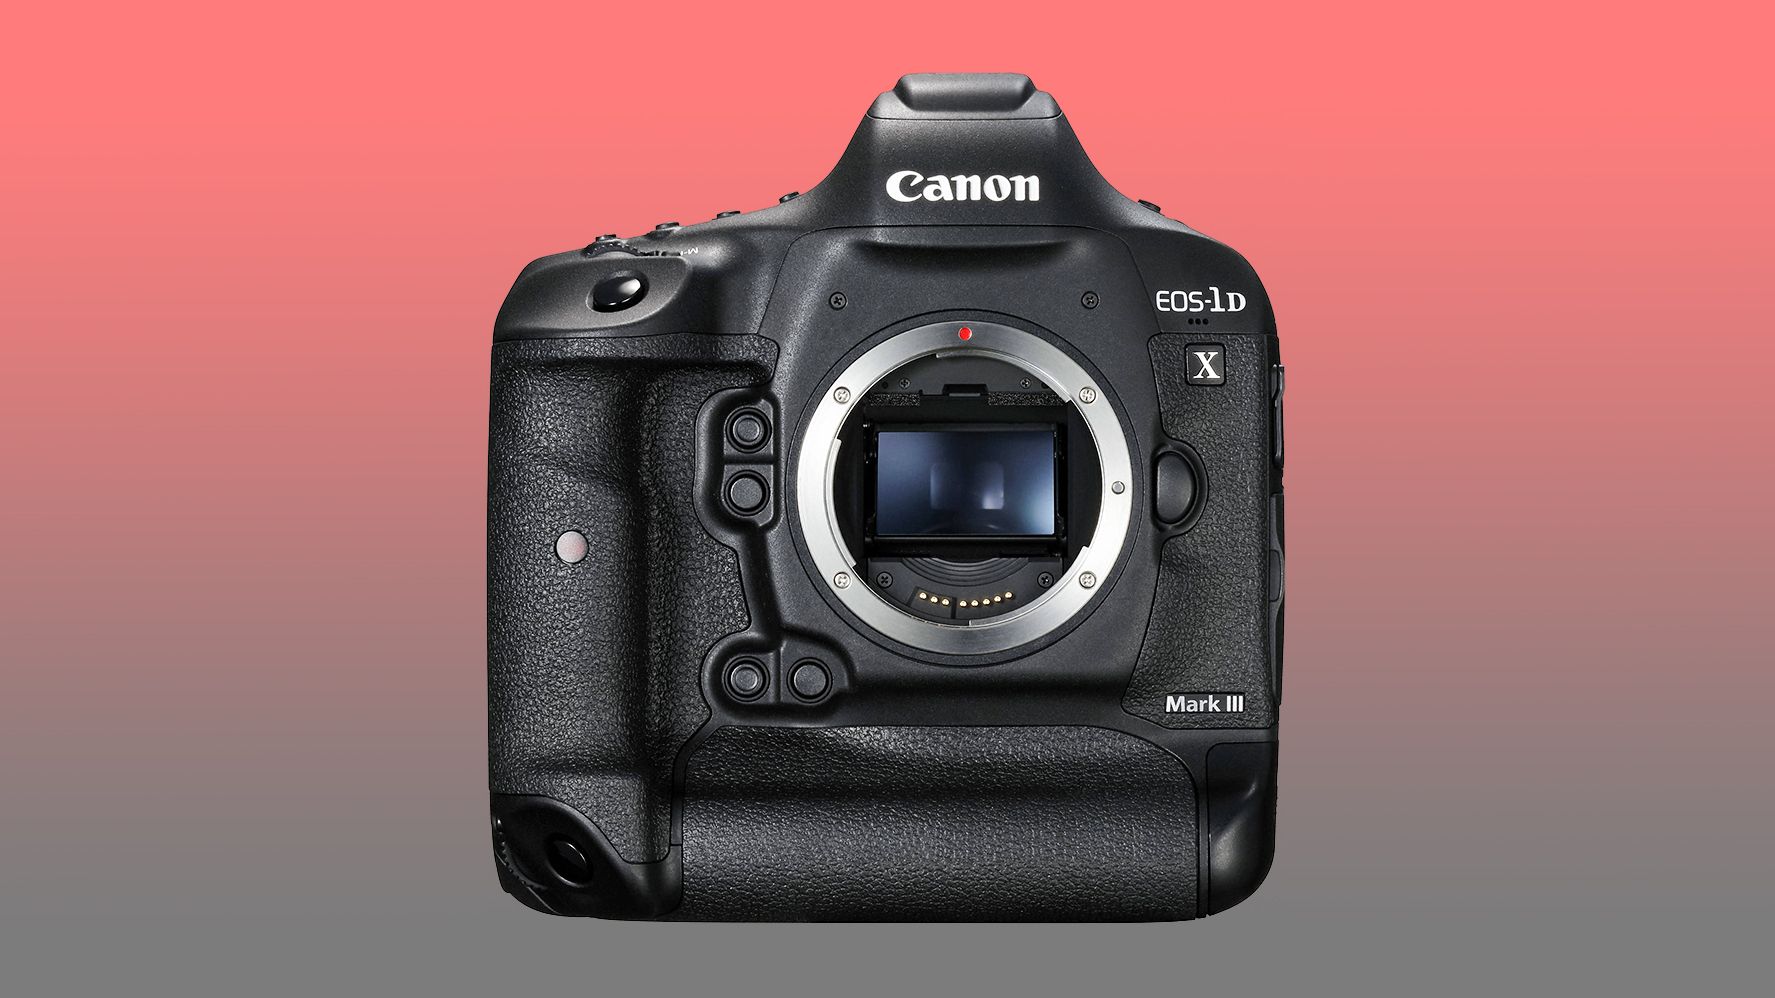 1ds mark. Canon 1dx Mark 3. Canon EOS-1ds Mark III. Canon EOS 1ds Mark lll. Canon EOS 1d x Mark III body.